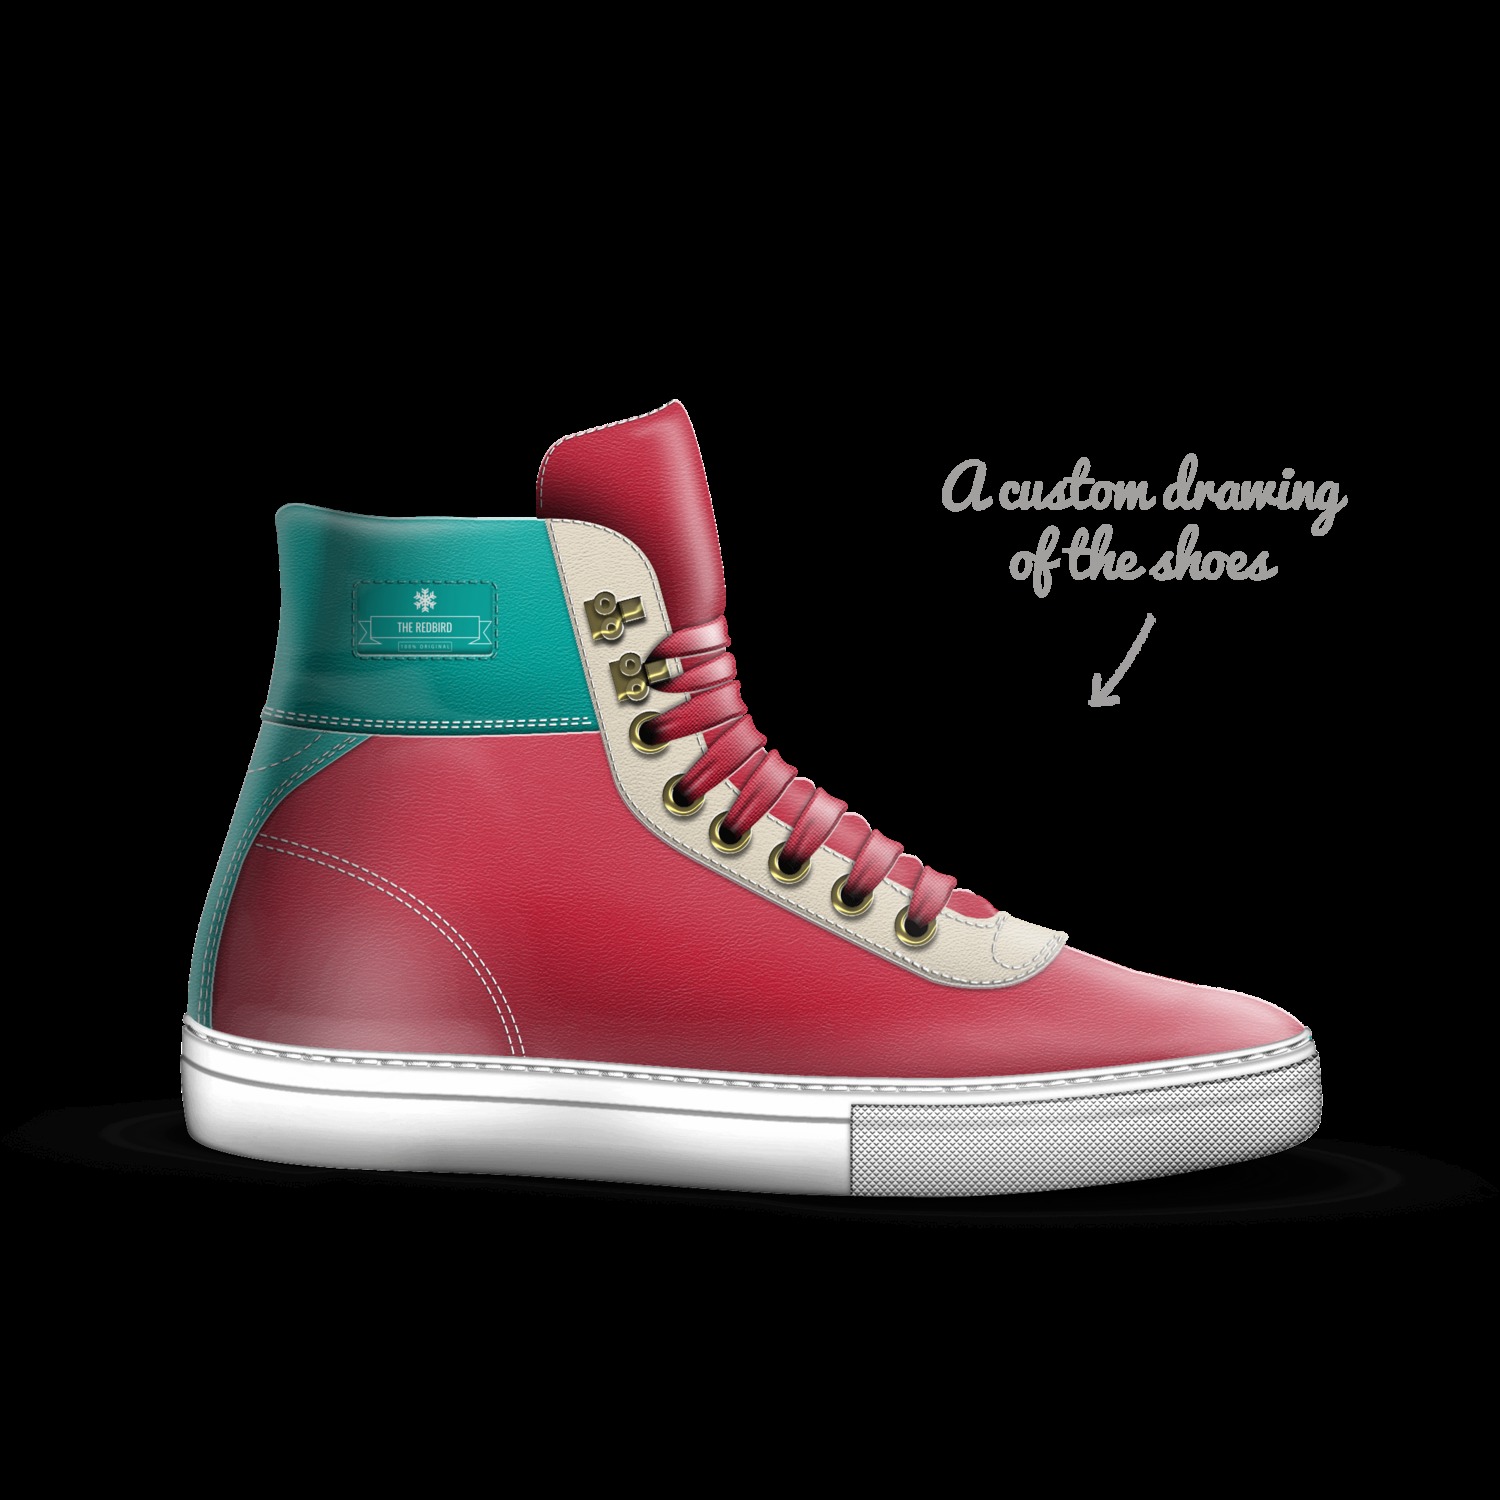 The Redbird | A Custom Shoe concept by 